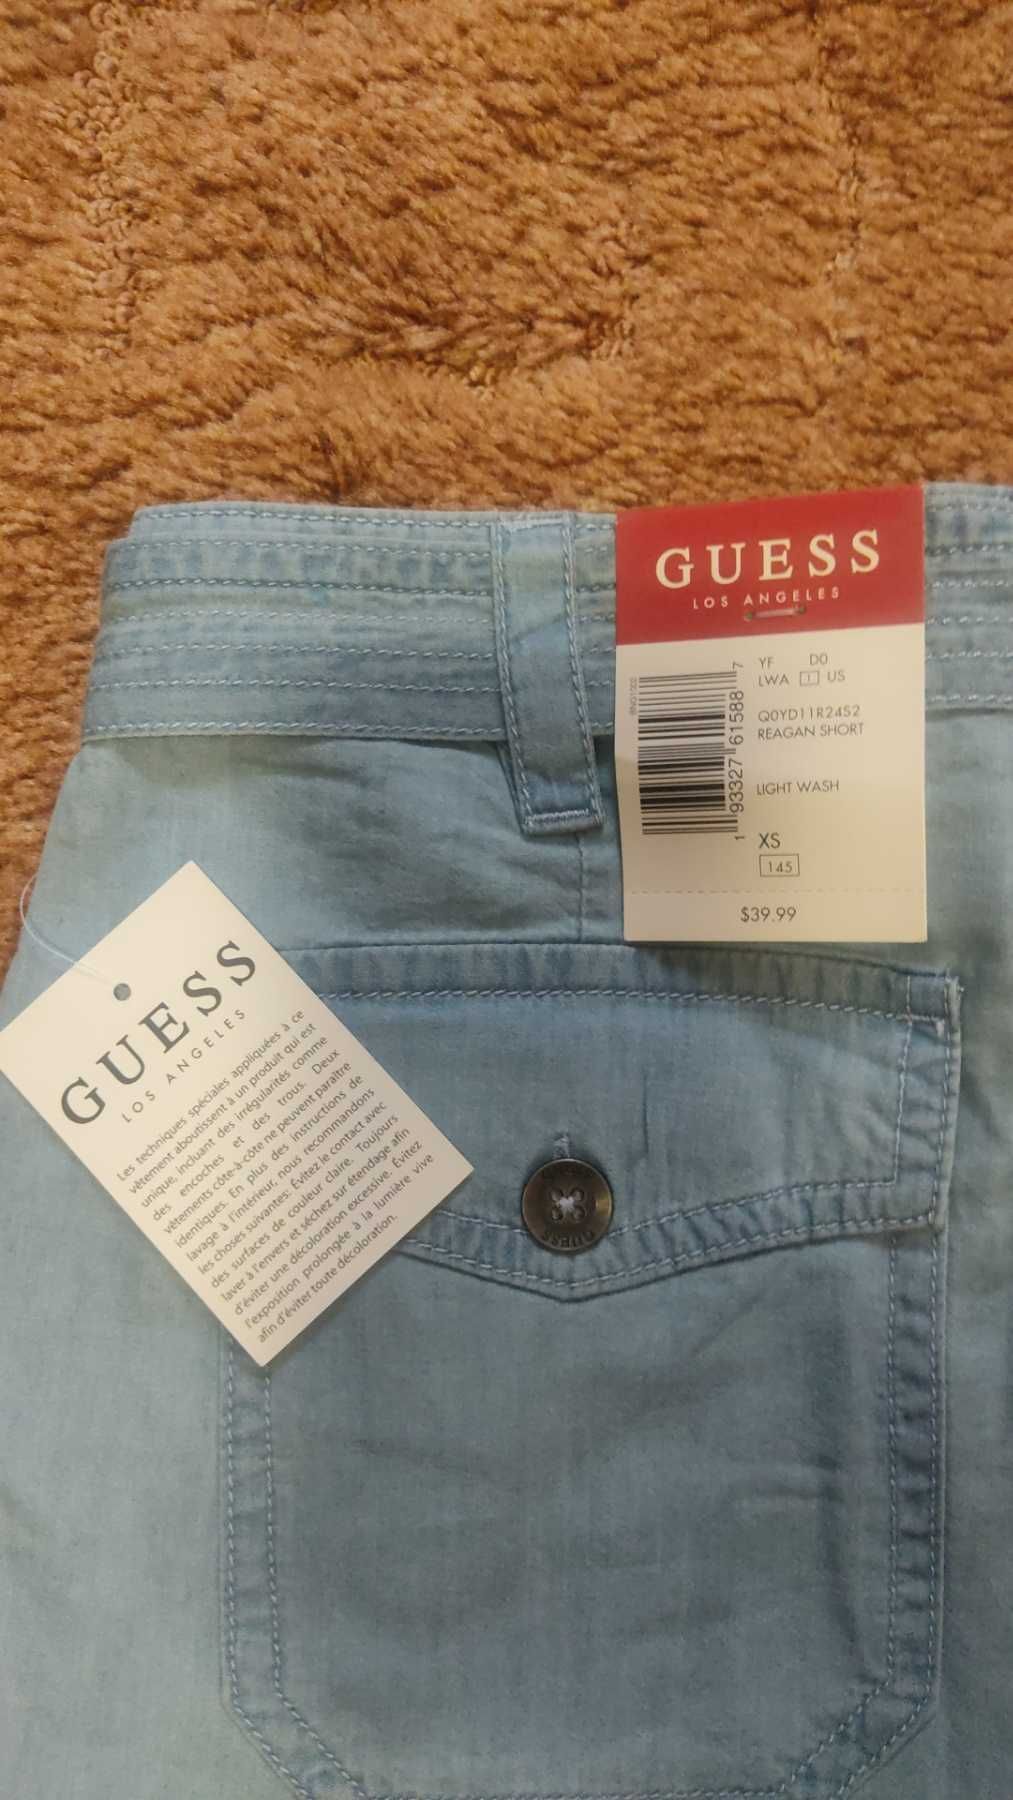 Качественные нежаркие брендовые джинсовые шорты
Guess